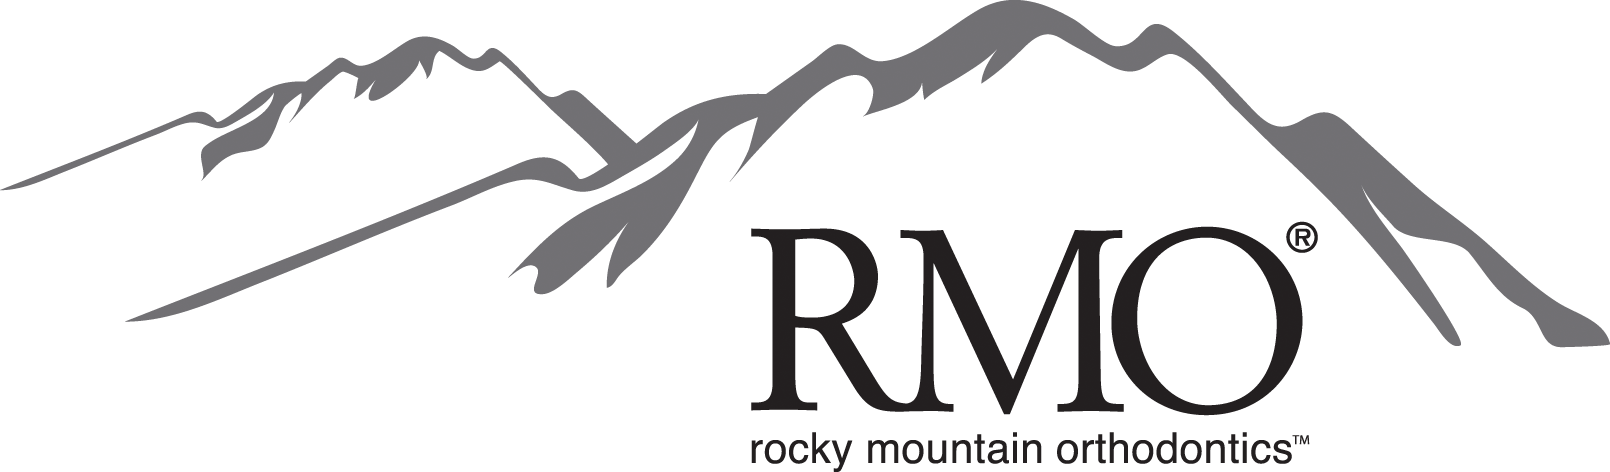 Celebrating 75 Years Of Orthodontics - Rocky Mountain Ortho Logo (1610x472)